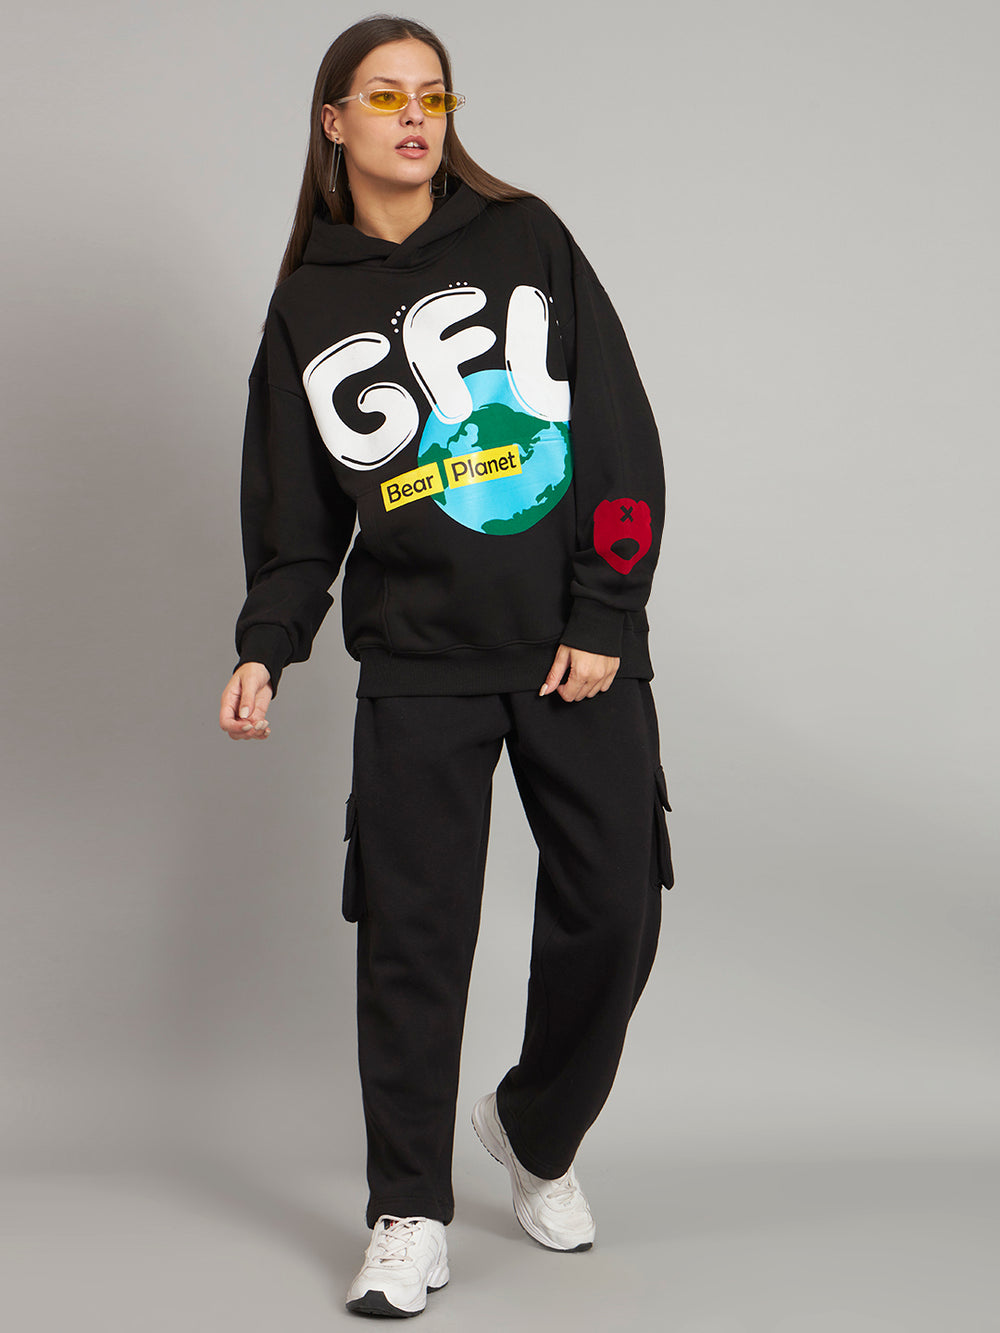 Griffel Women's Black GFL Bear Planet print Oversized Fleece Hoodie Sweatshirt - griffel